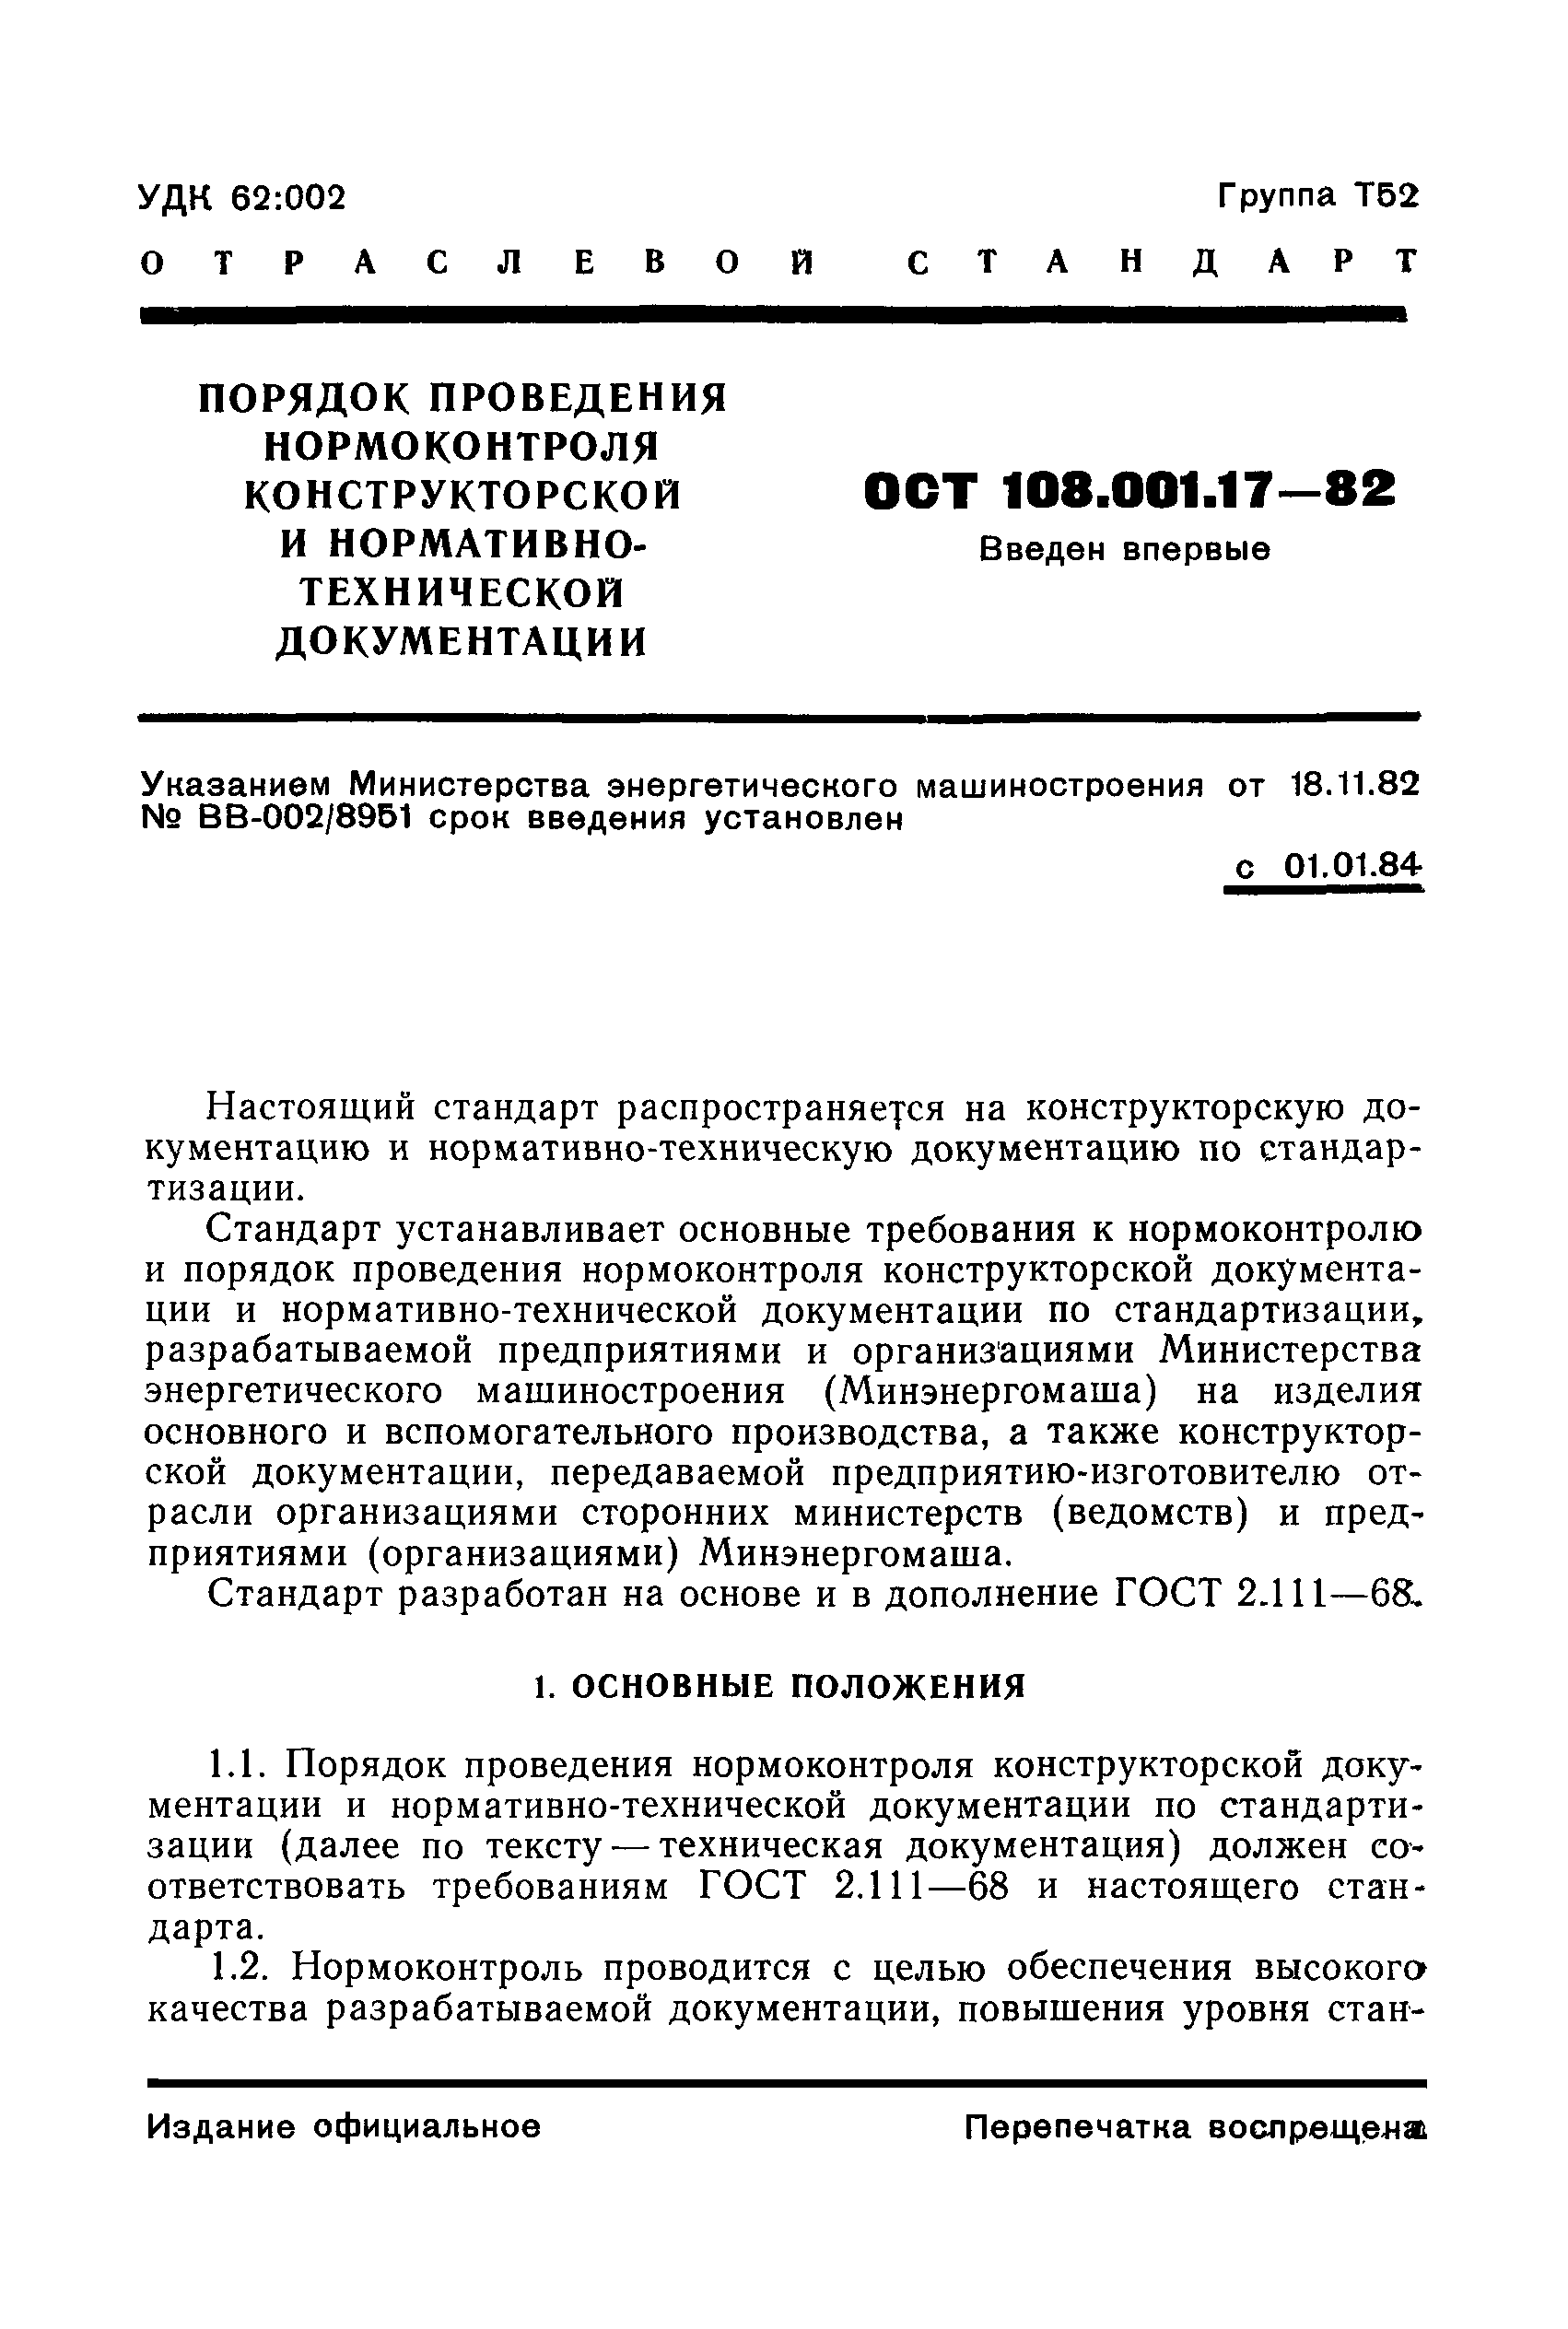 ОСТ 108.001.17-82